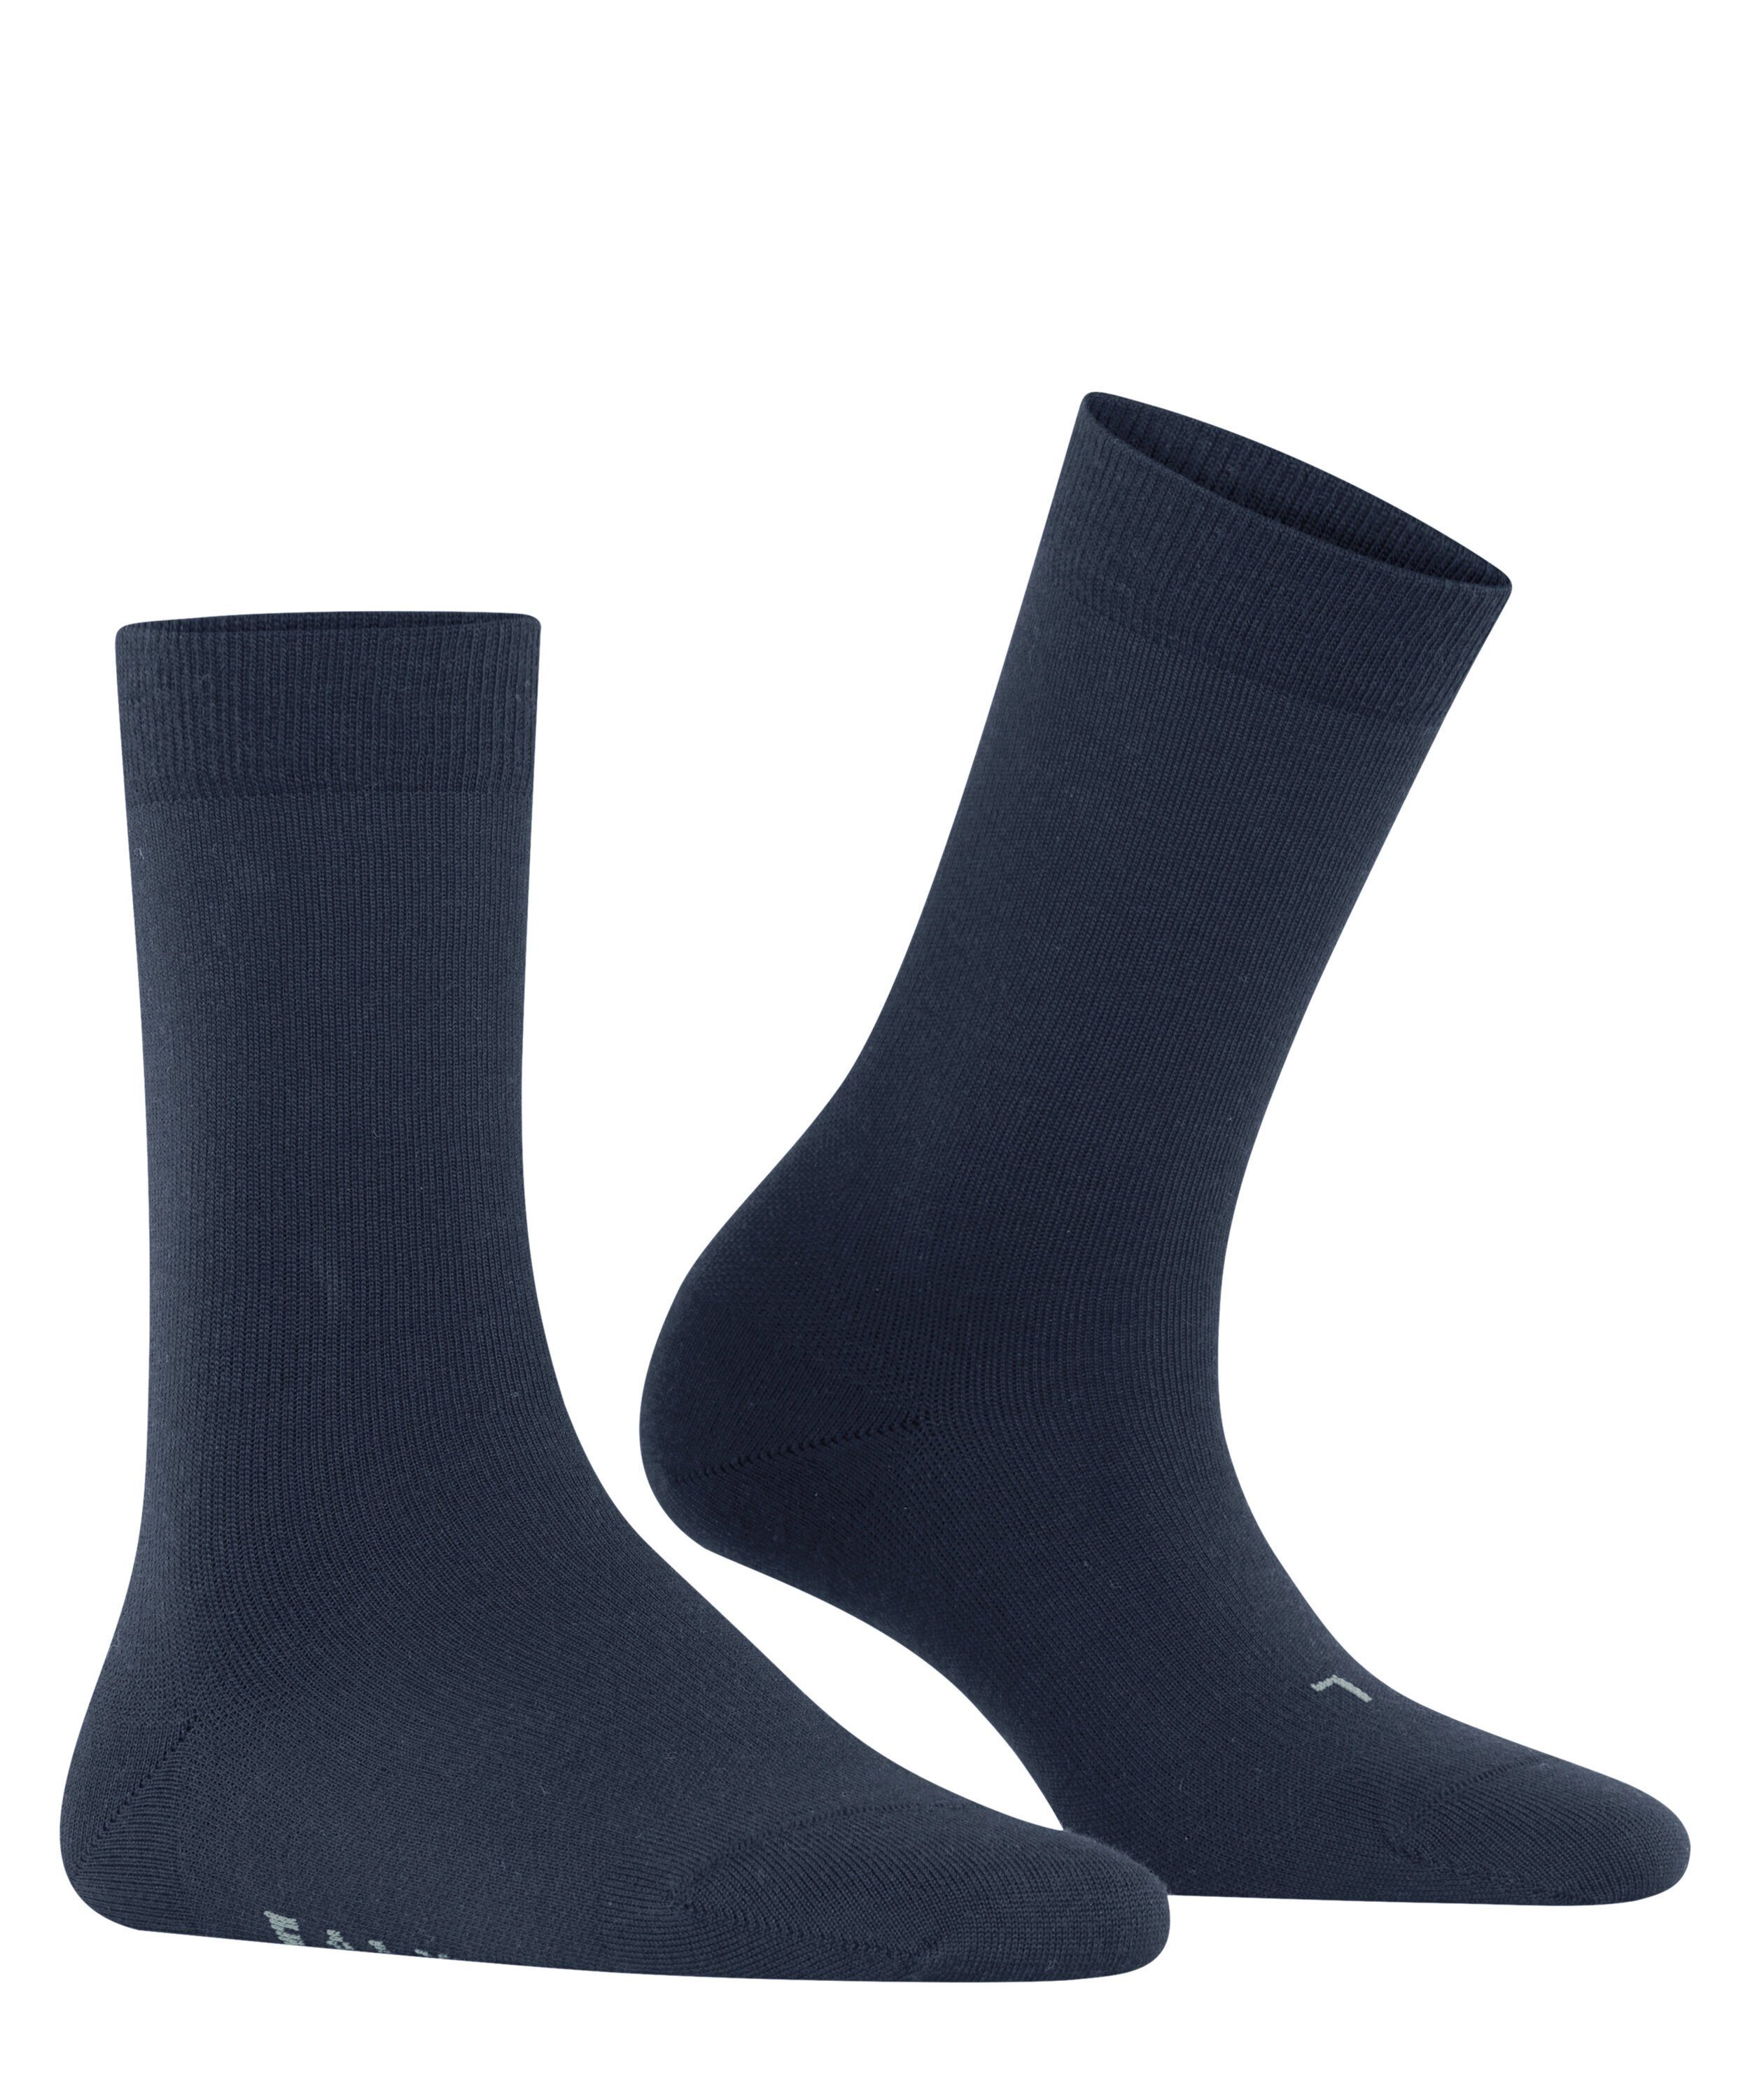 FALKE Wool Everyday blue (1-Paar) (6116) Stabilizing Socken space